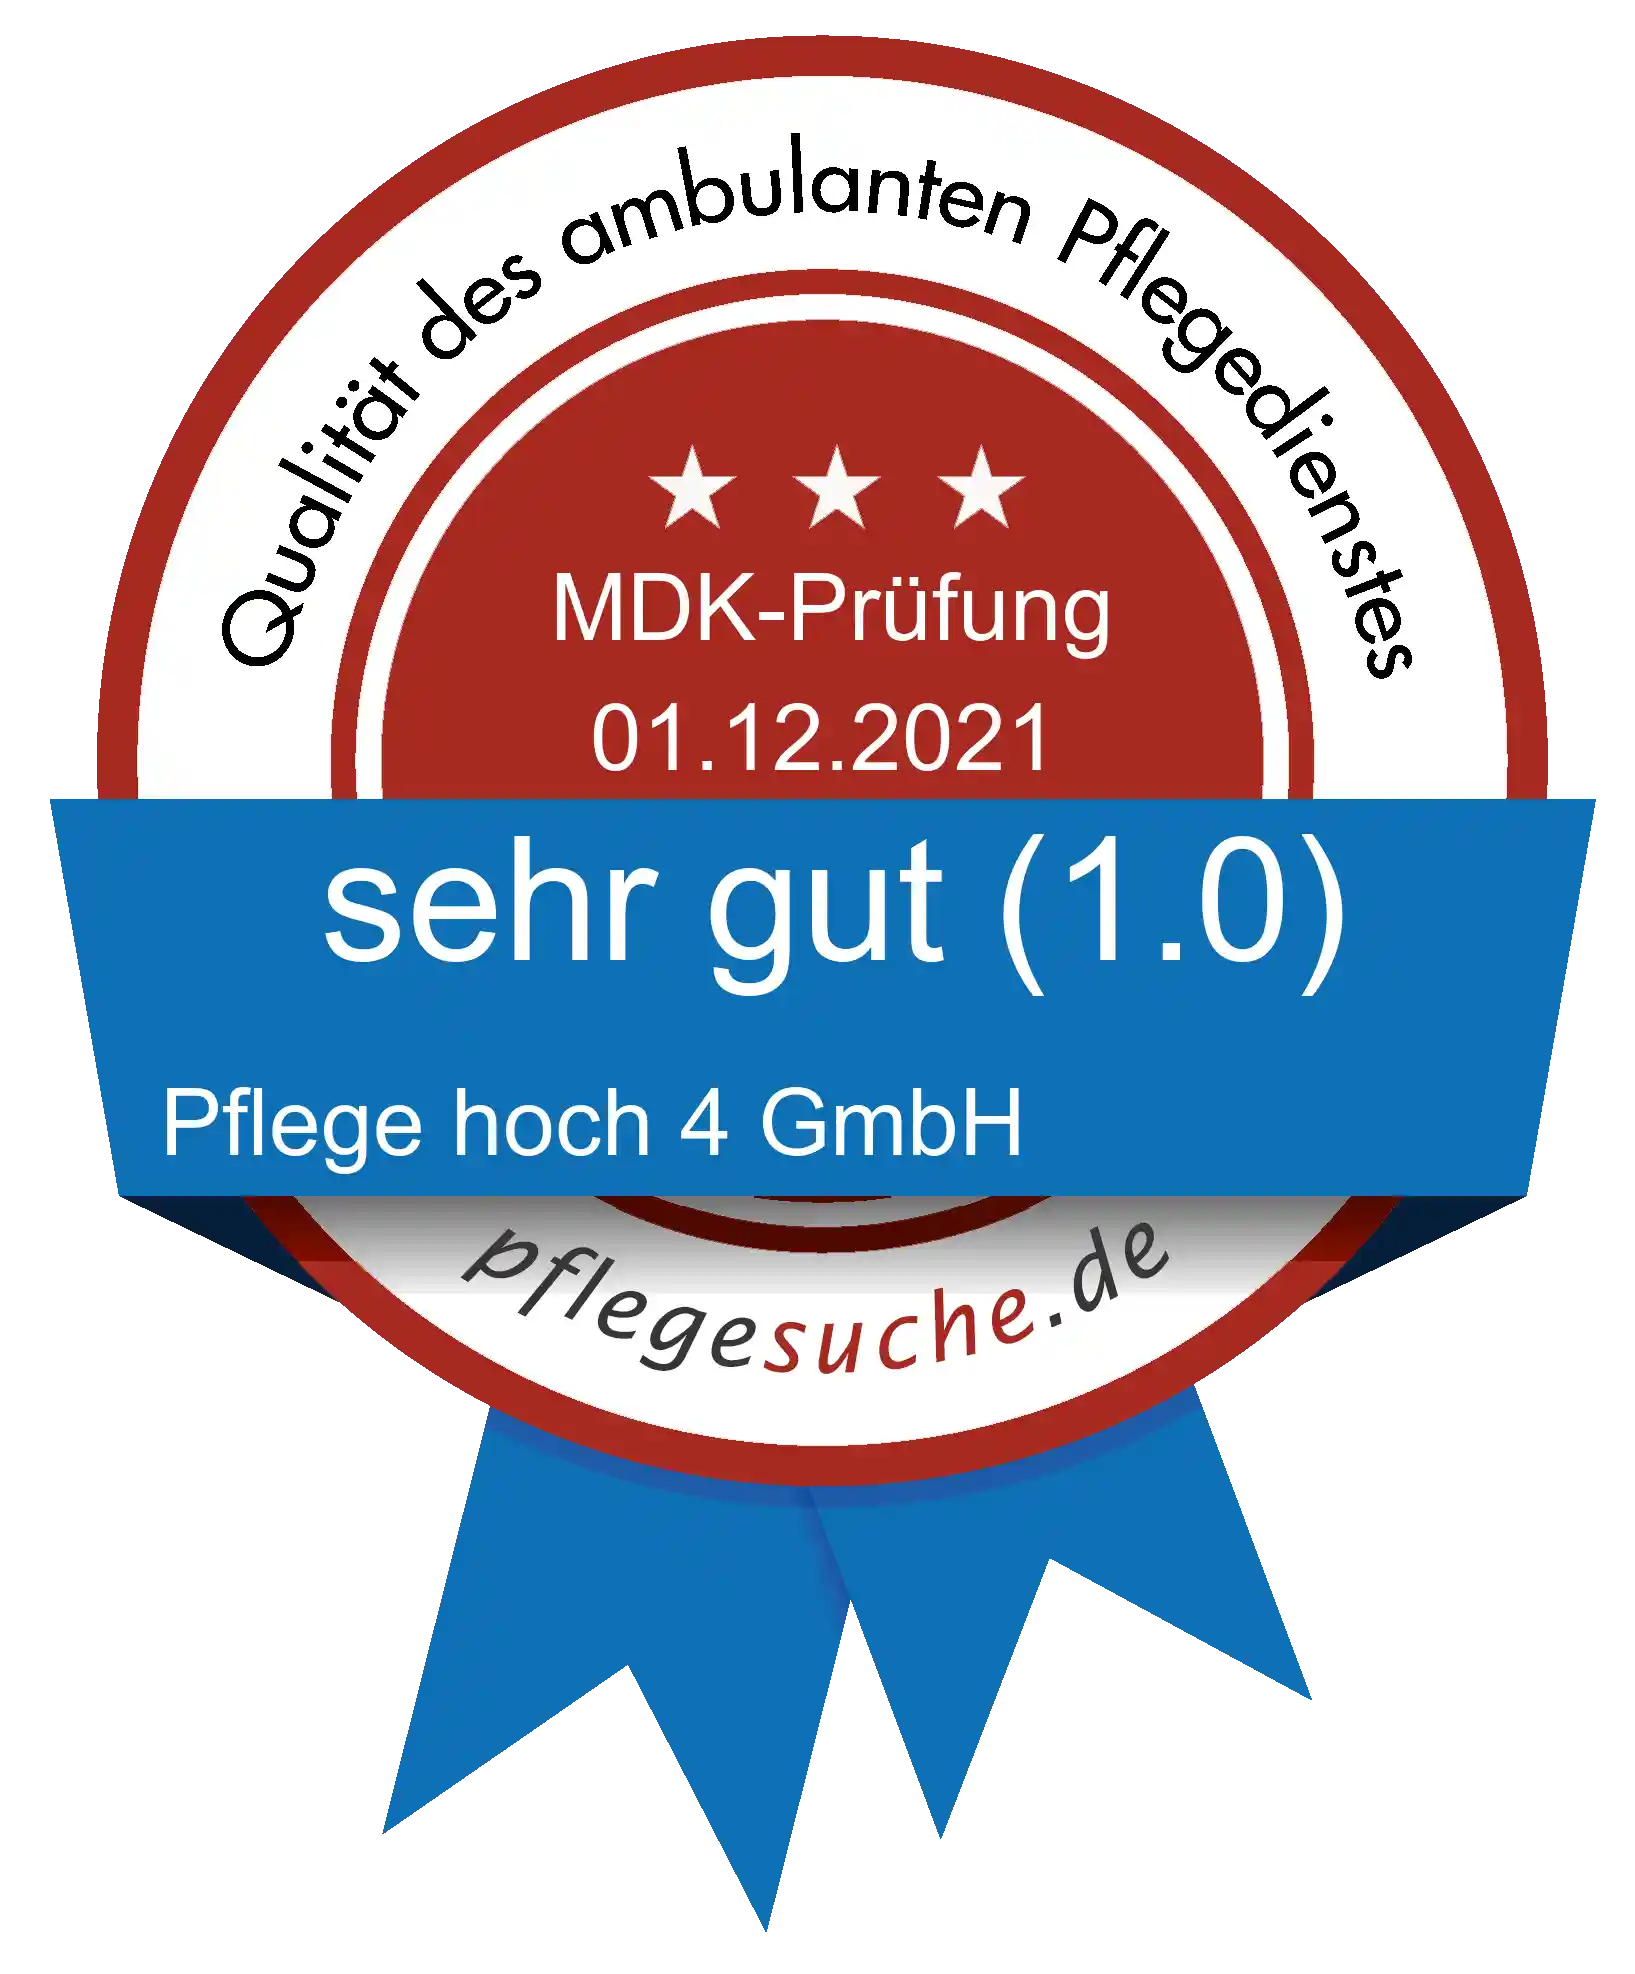 Siegel Benotung: Pflege hoch 4 GmbH